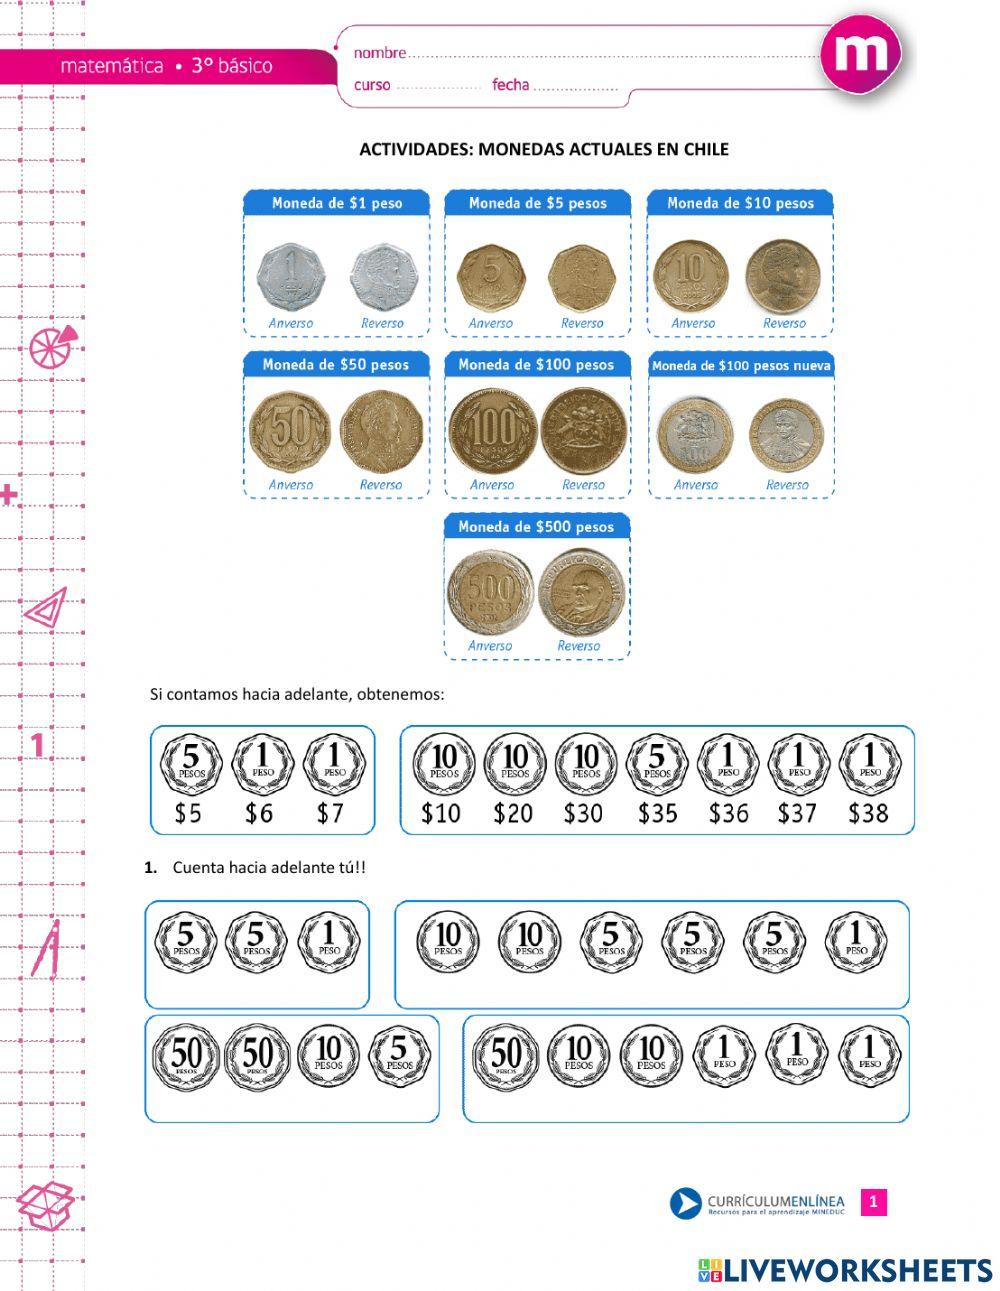 Monedas de 100- 10- 5 -1